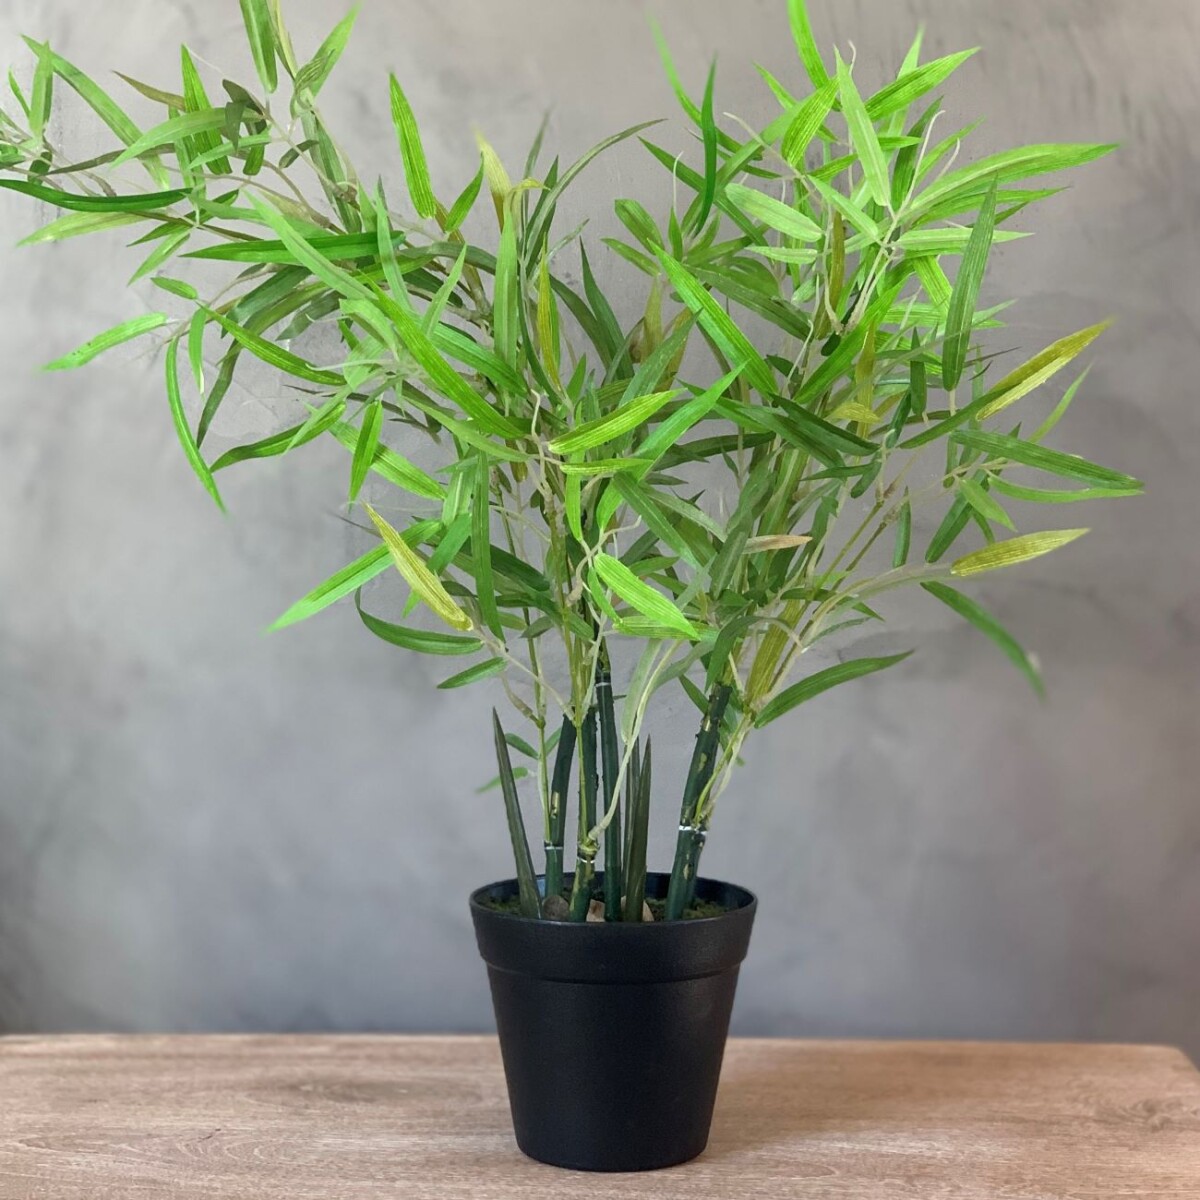 Planta Bamboo artificial 